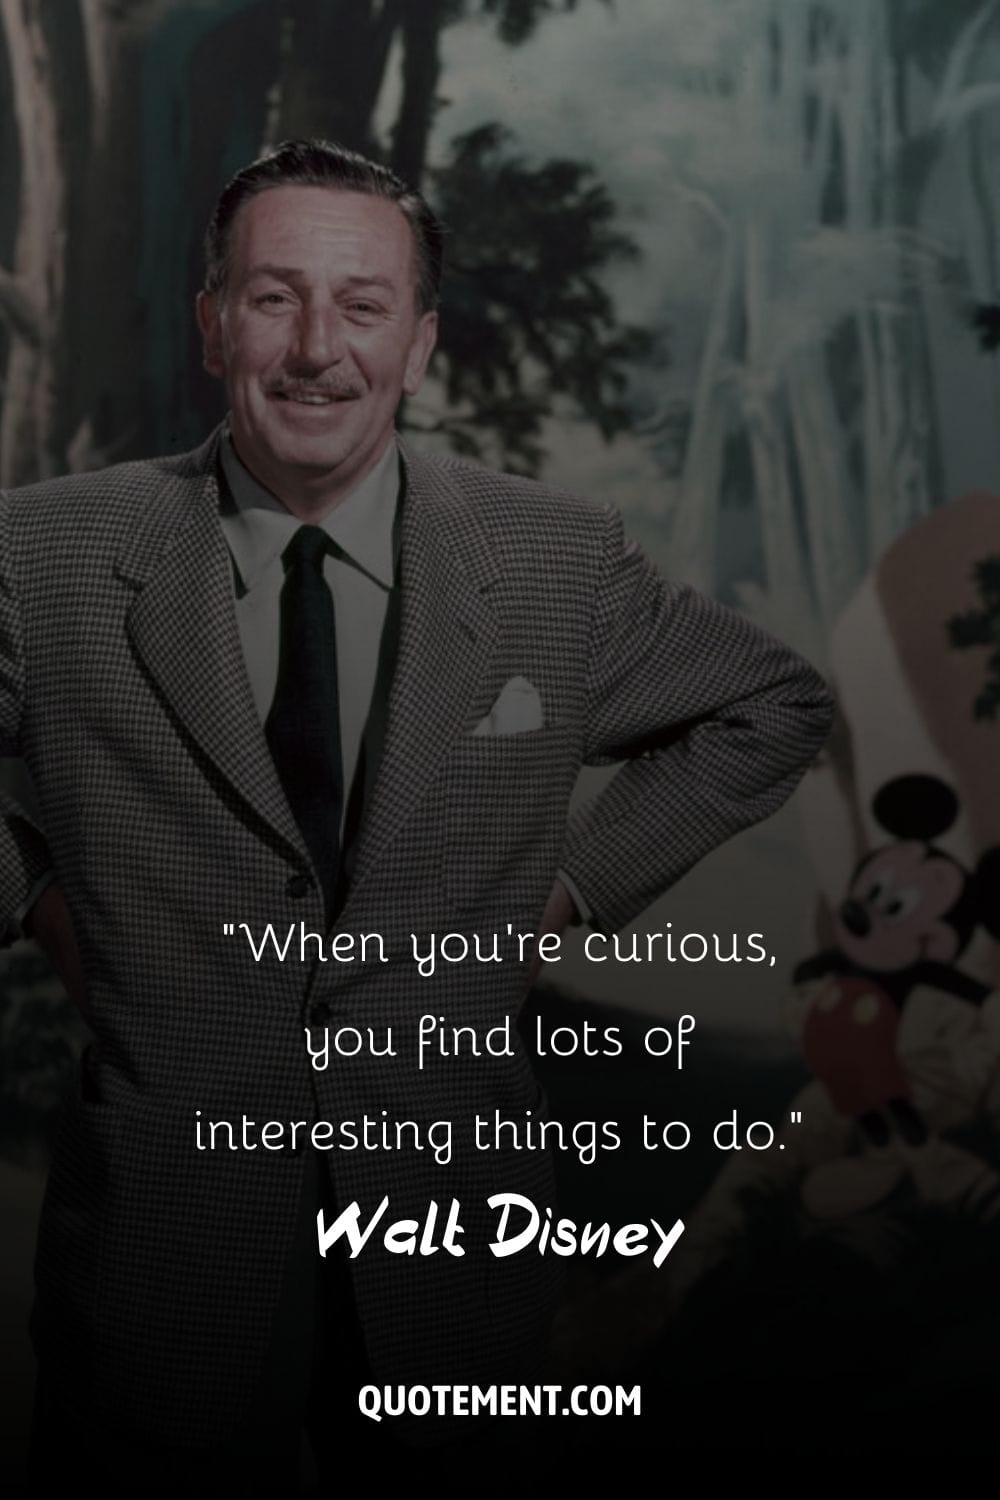 El alegre carisma de Walt Disney plasmado en una pose.